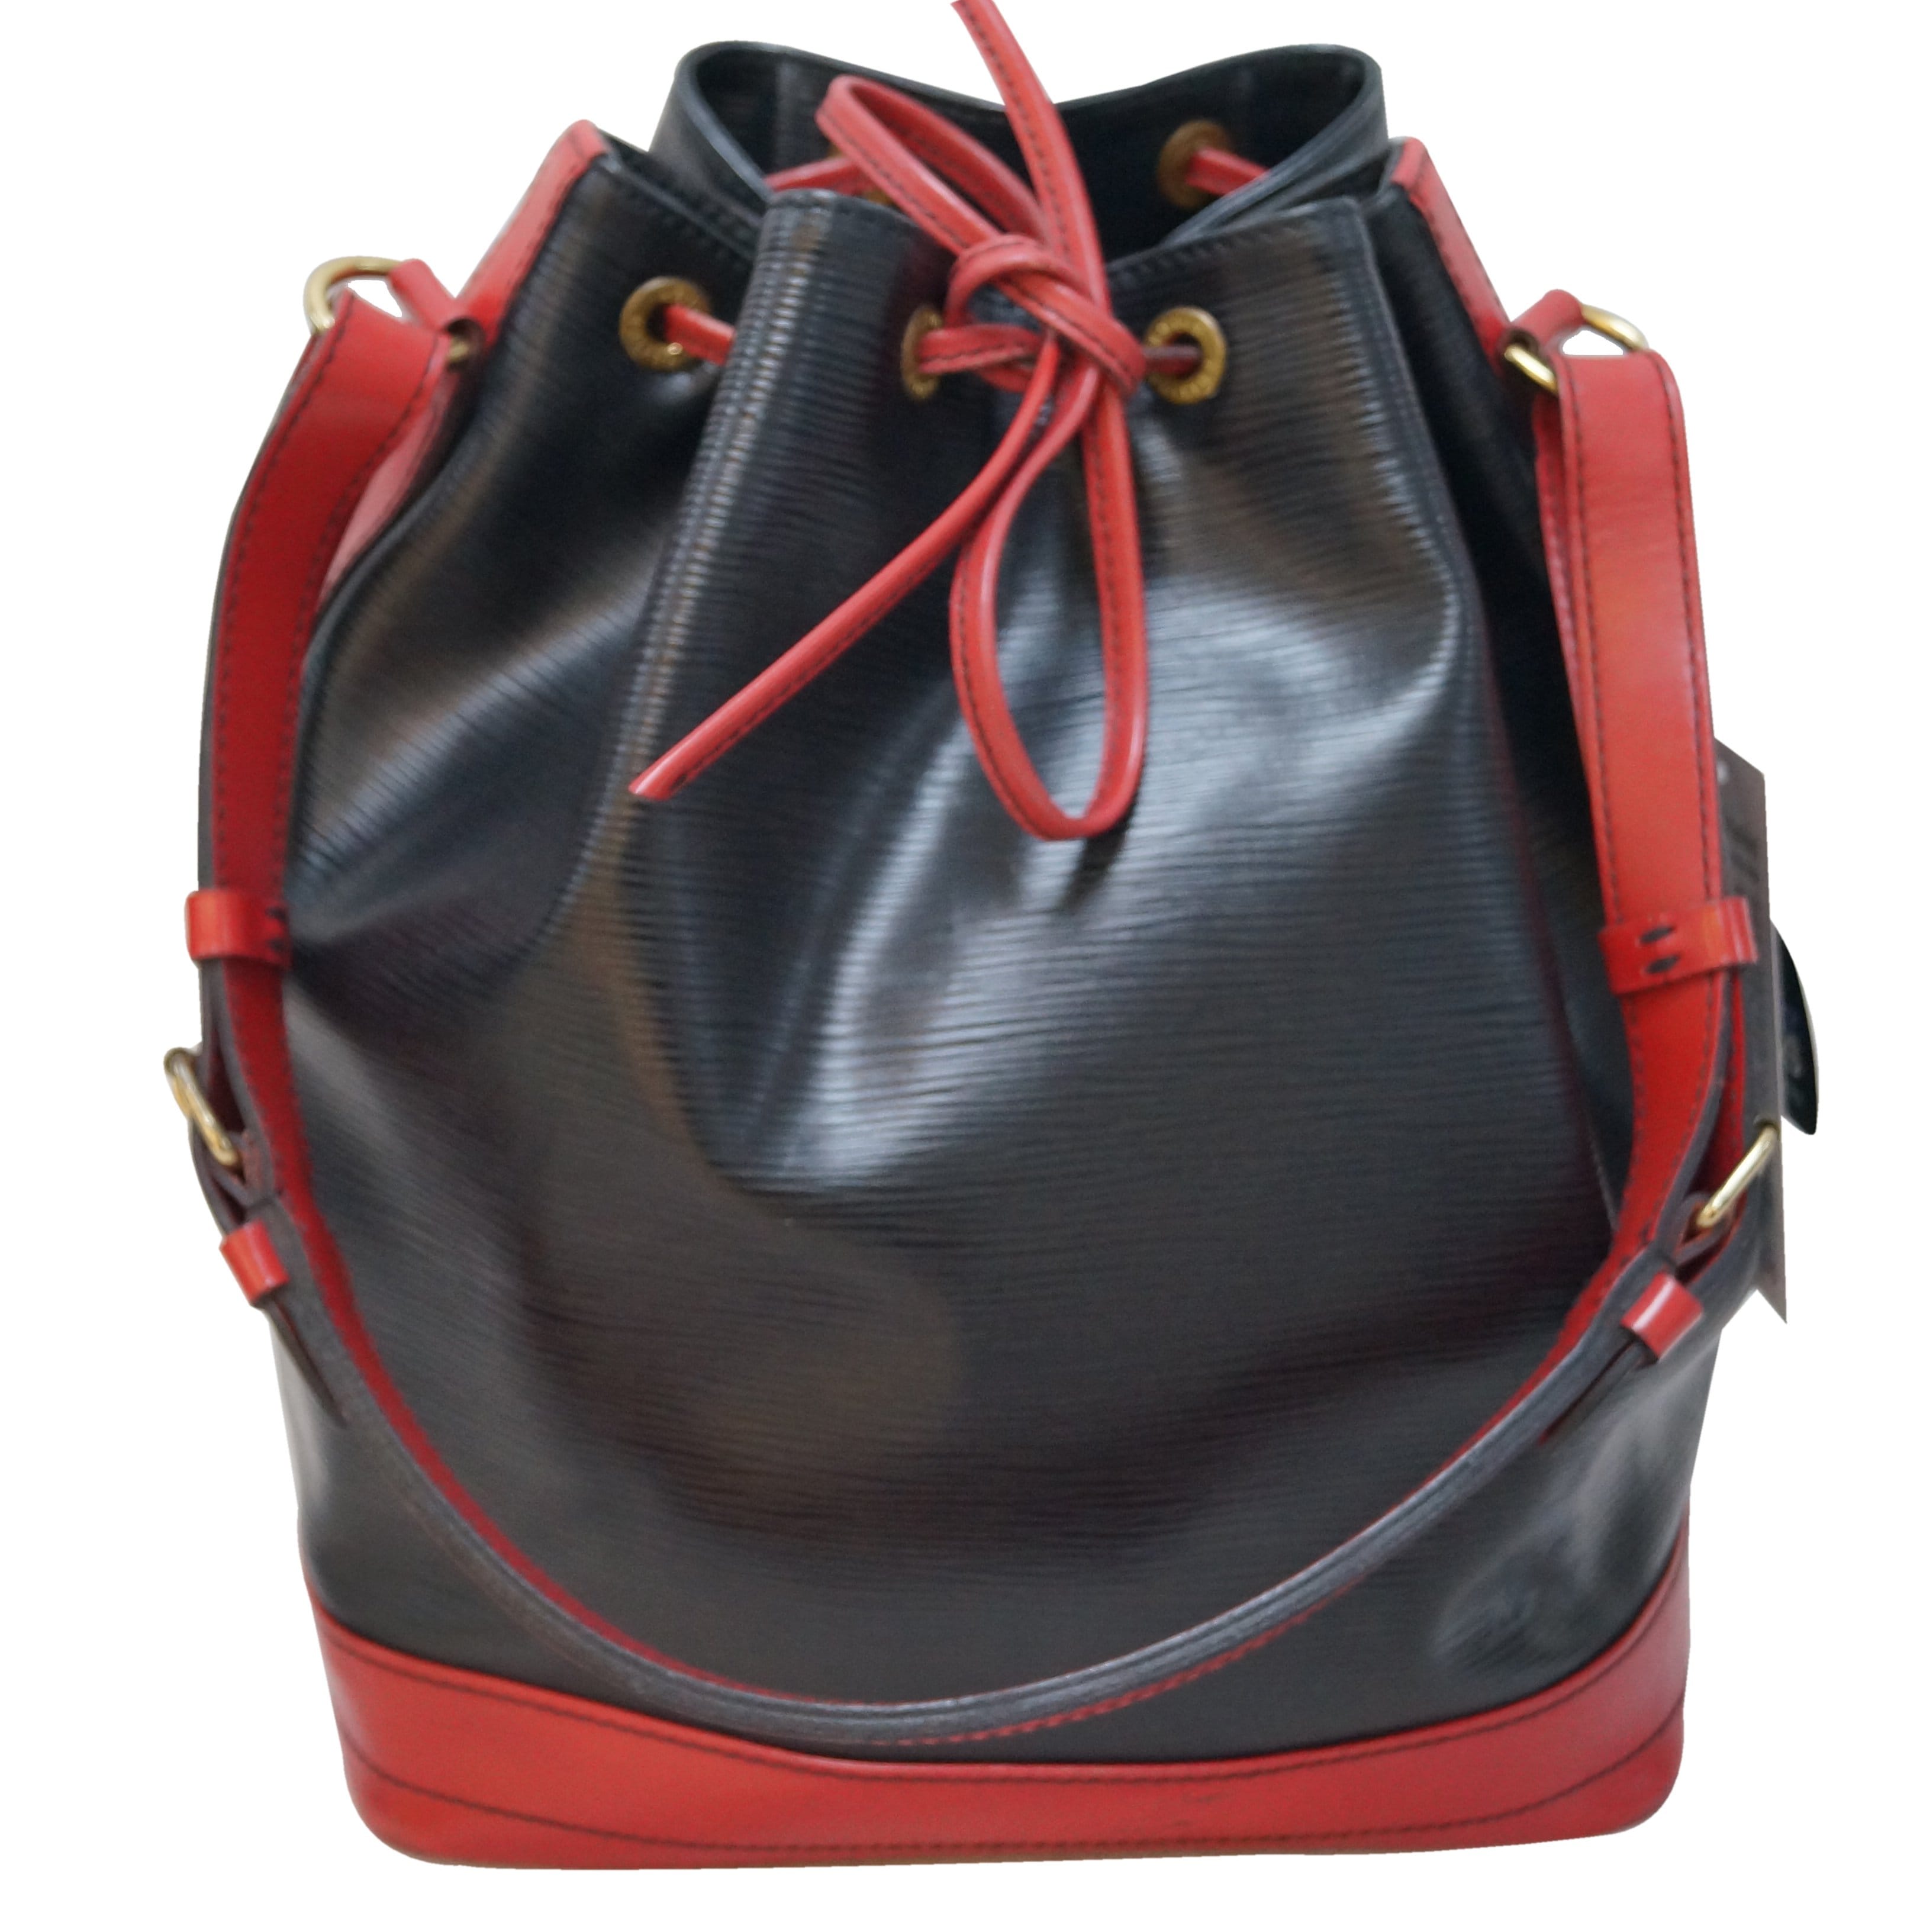 LOUIS VUITTON Louis Vuitton Epi Noe Shoulder Bag Bicolor 2 Tone